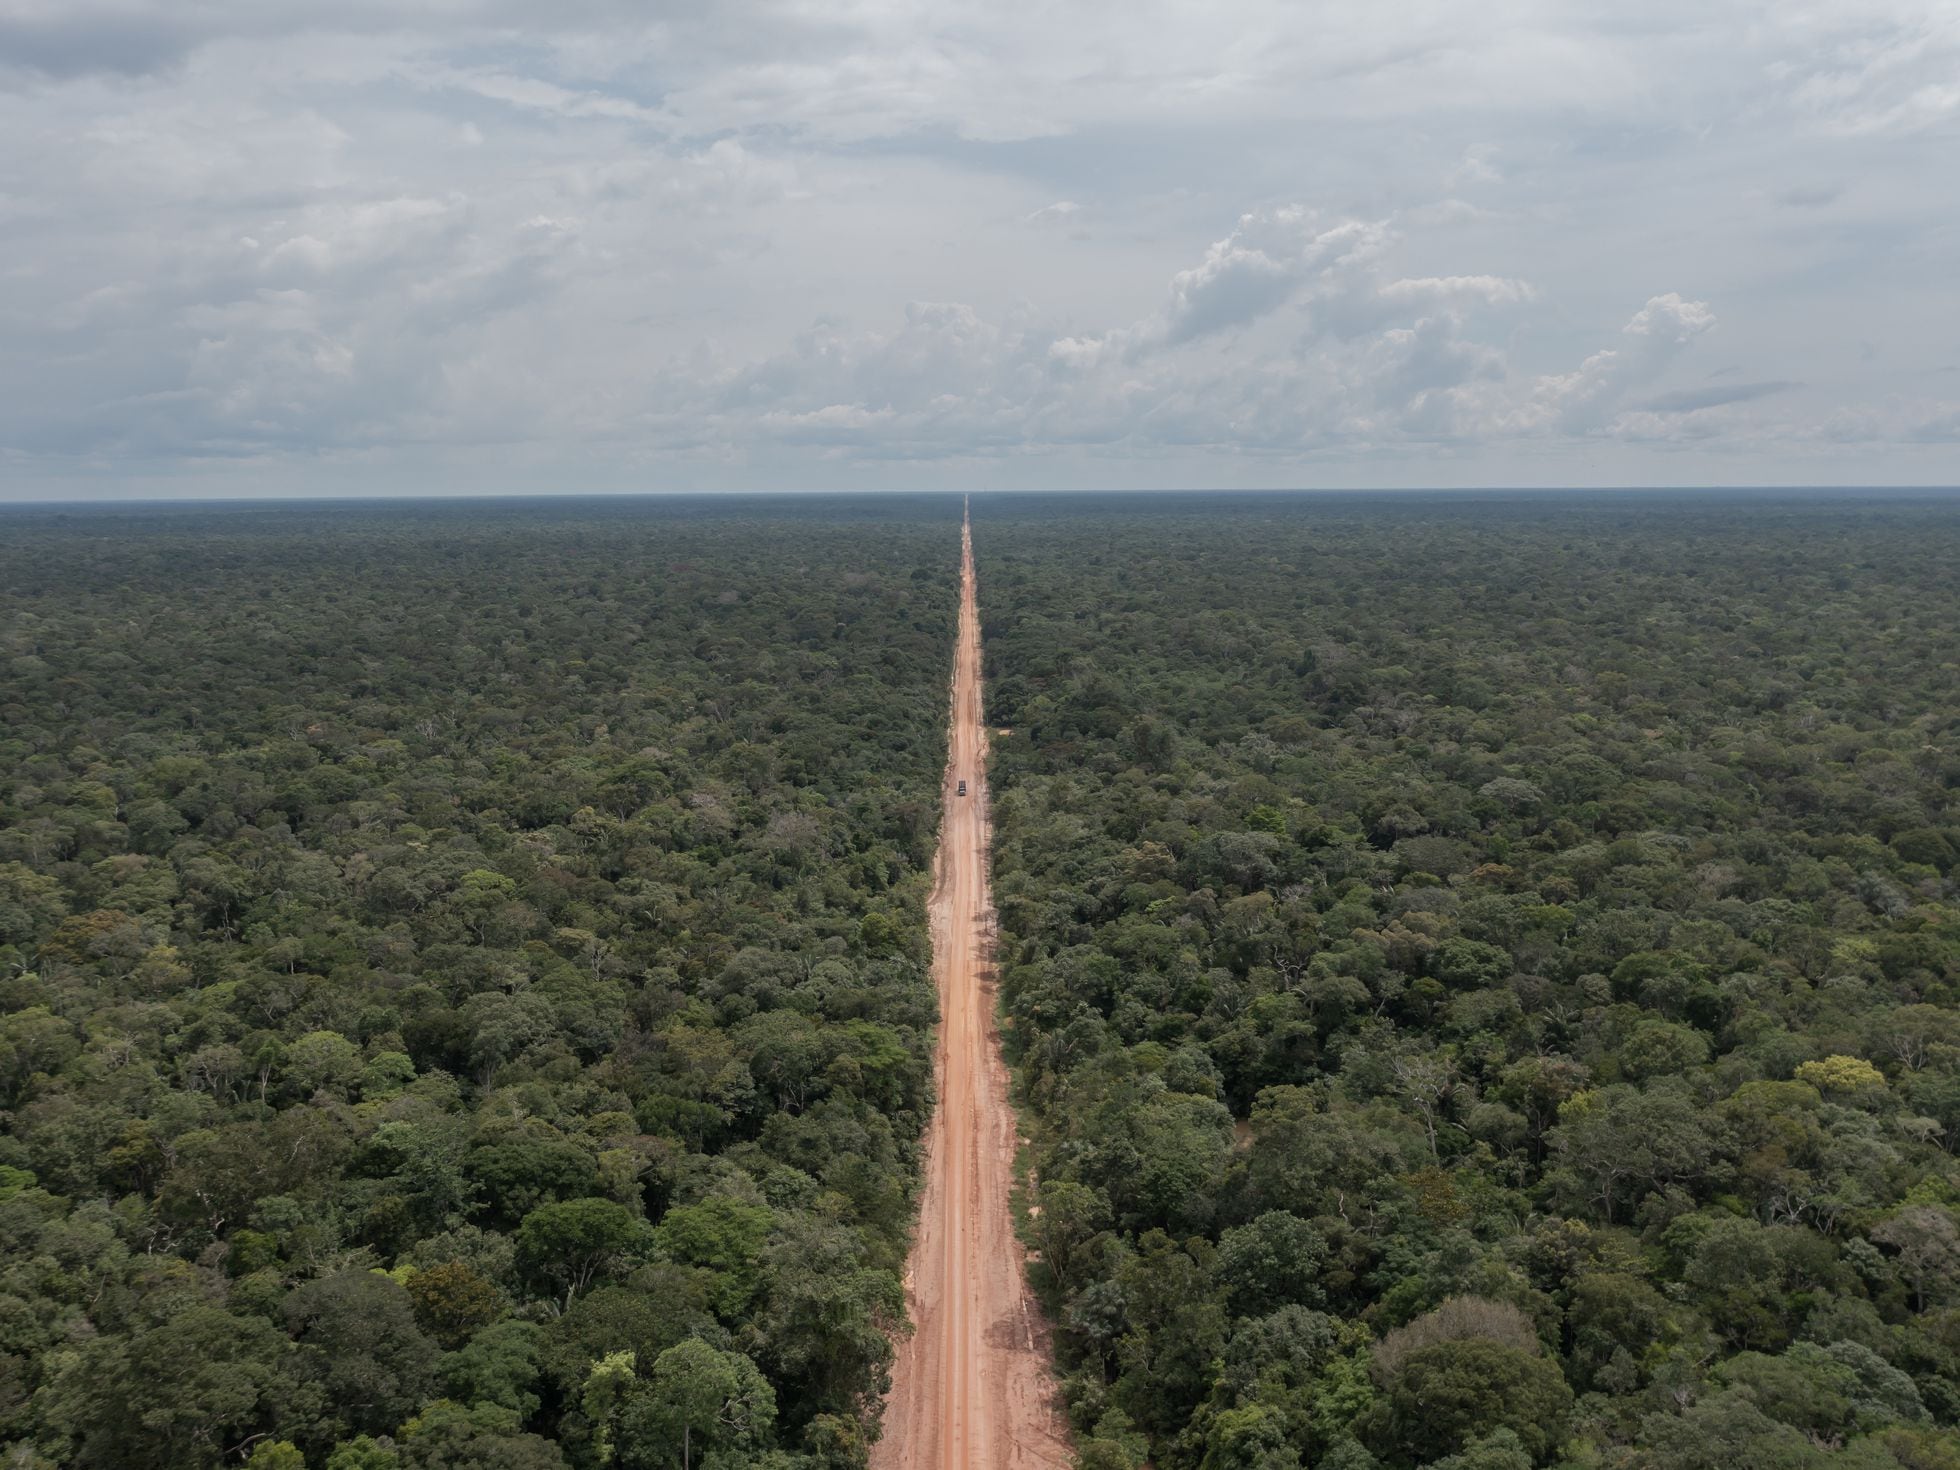 Viaje por la BR-319: carretera hacia la destrucción de la Amazonia | Medio  Ambiente | EL PAÍS